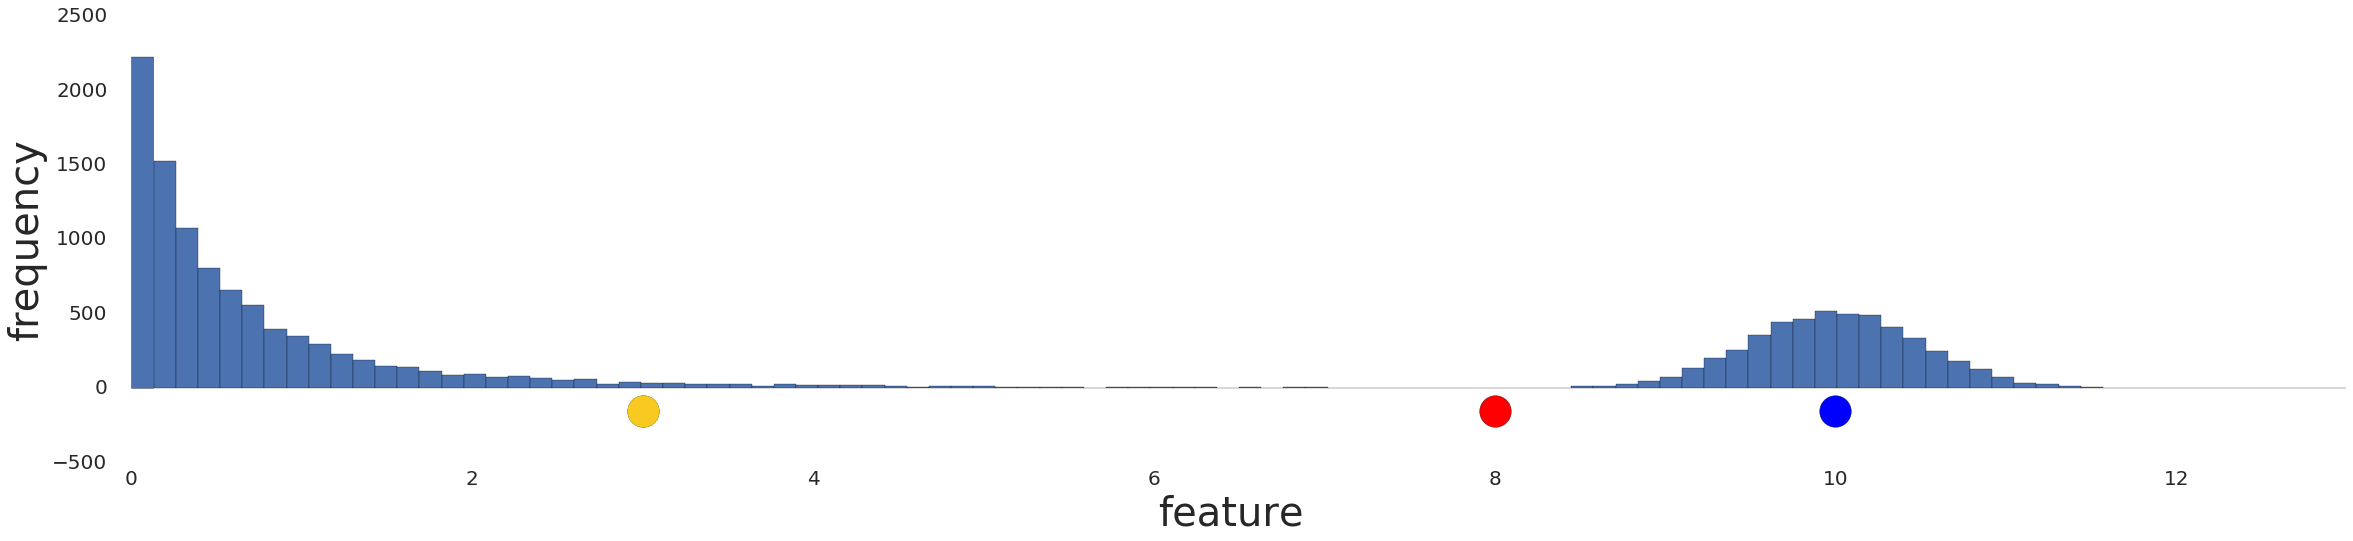 رسم بياني يعرض توزيع البيانات قبل أي معالجة مسبقة